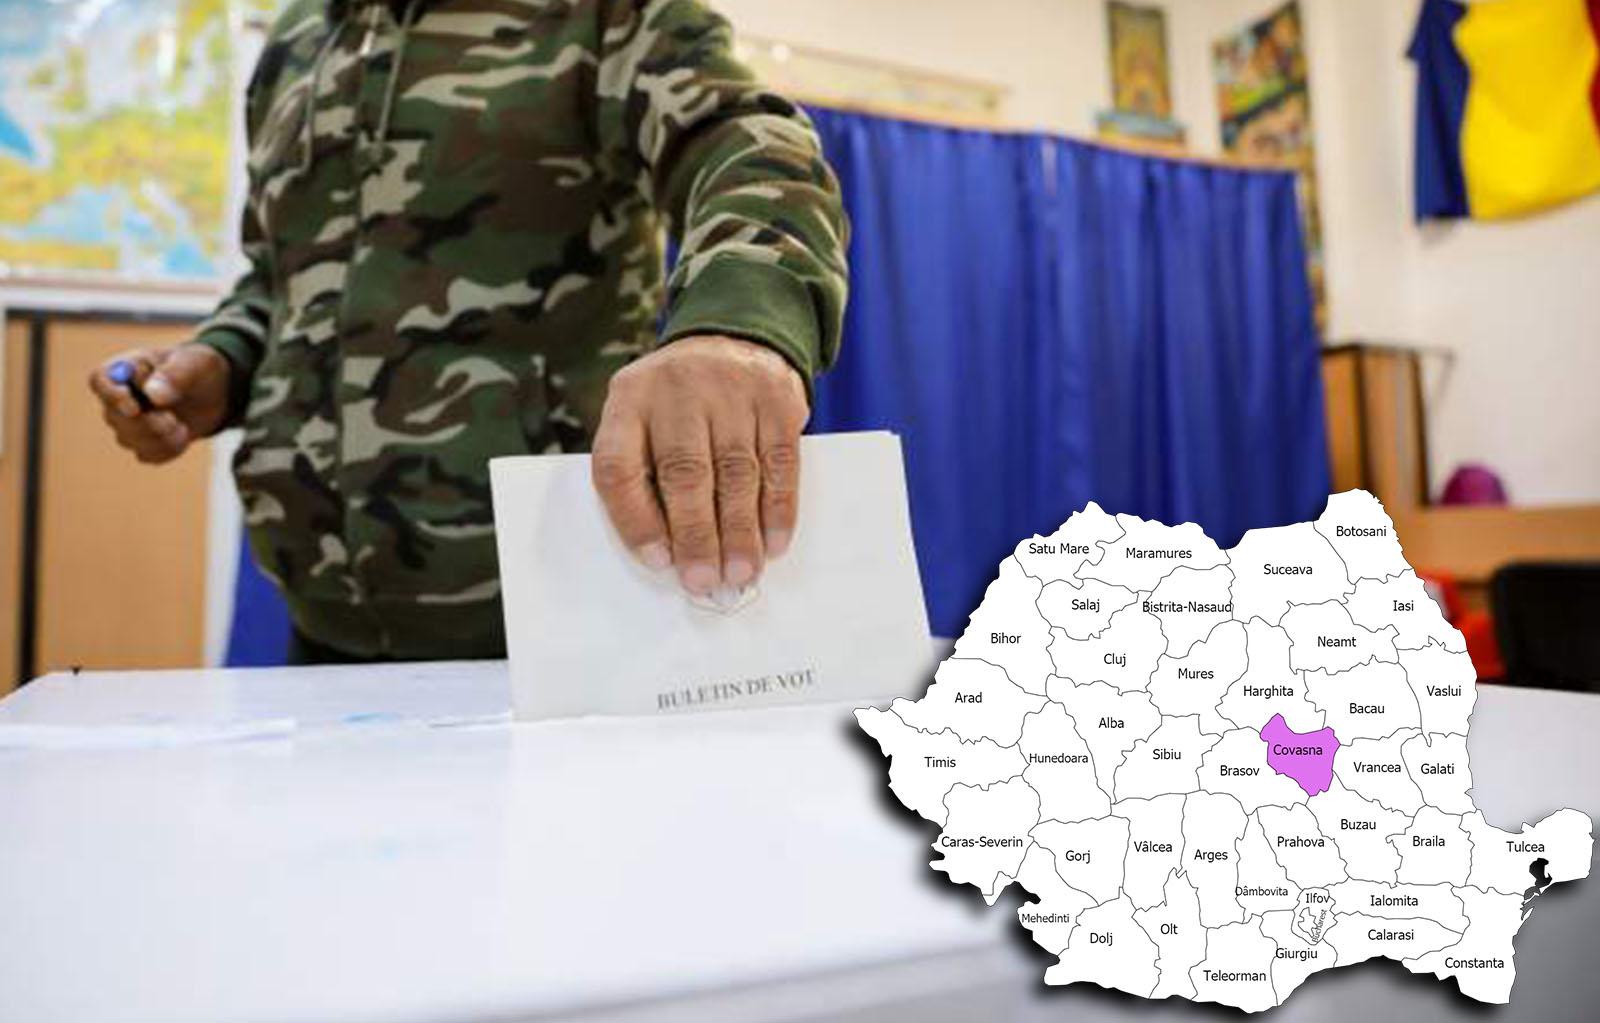 Rezultate alegeri parlamentare 2020 în județul Covasna. Cine câștigă alegerile pentru Senat și Camera Deputaților